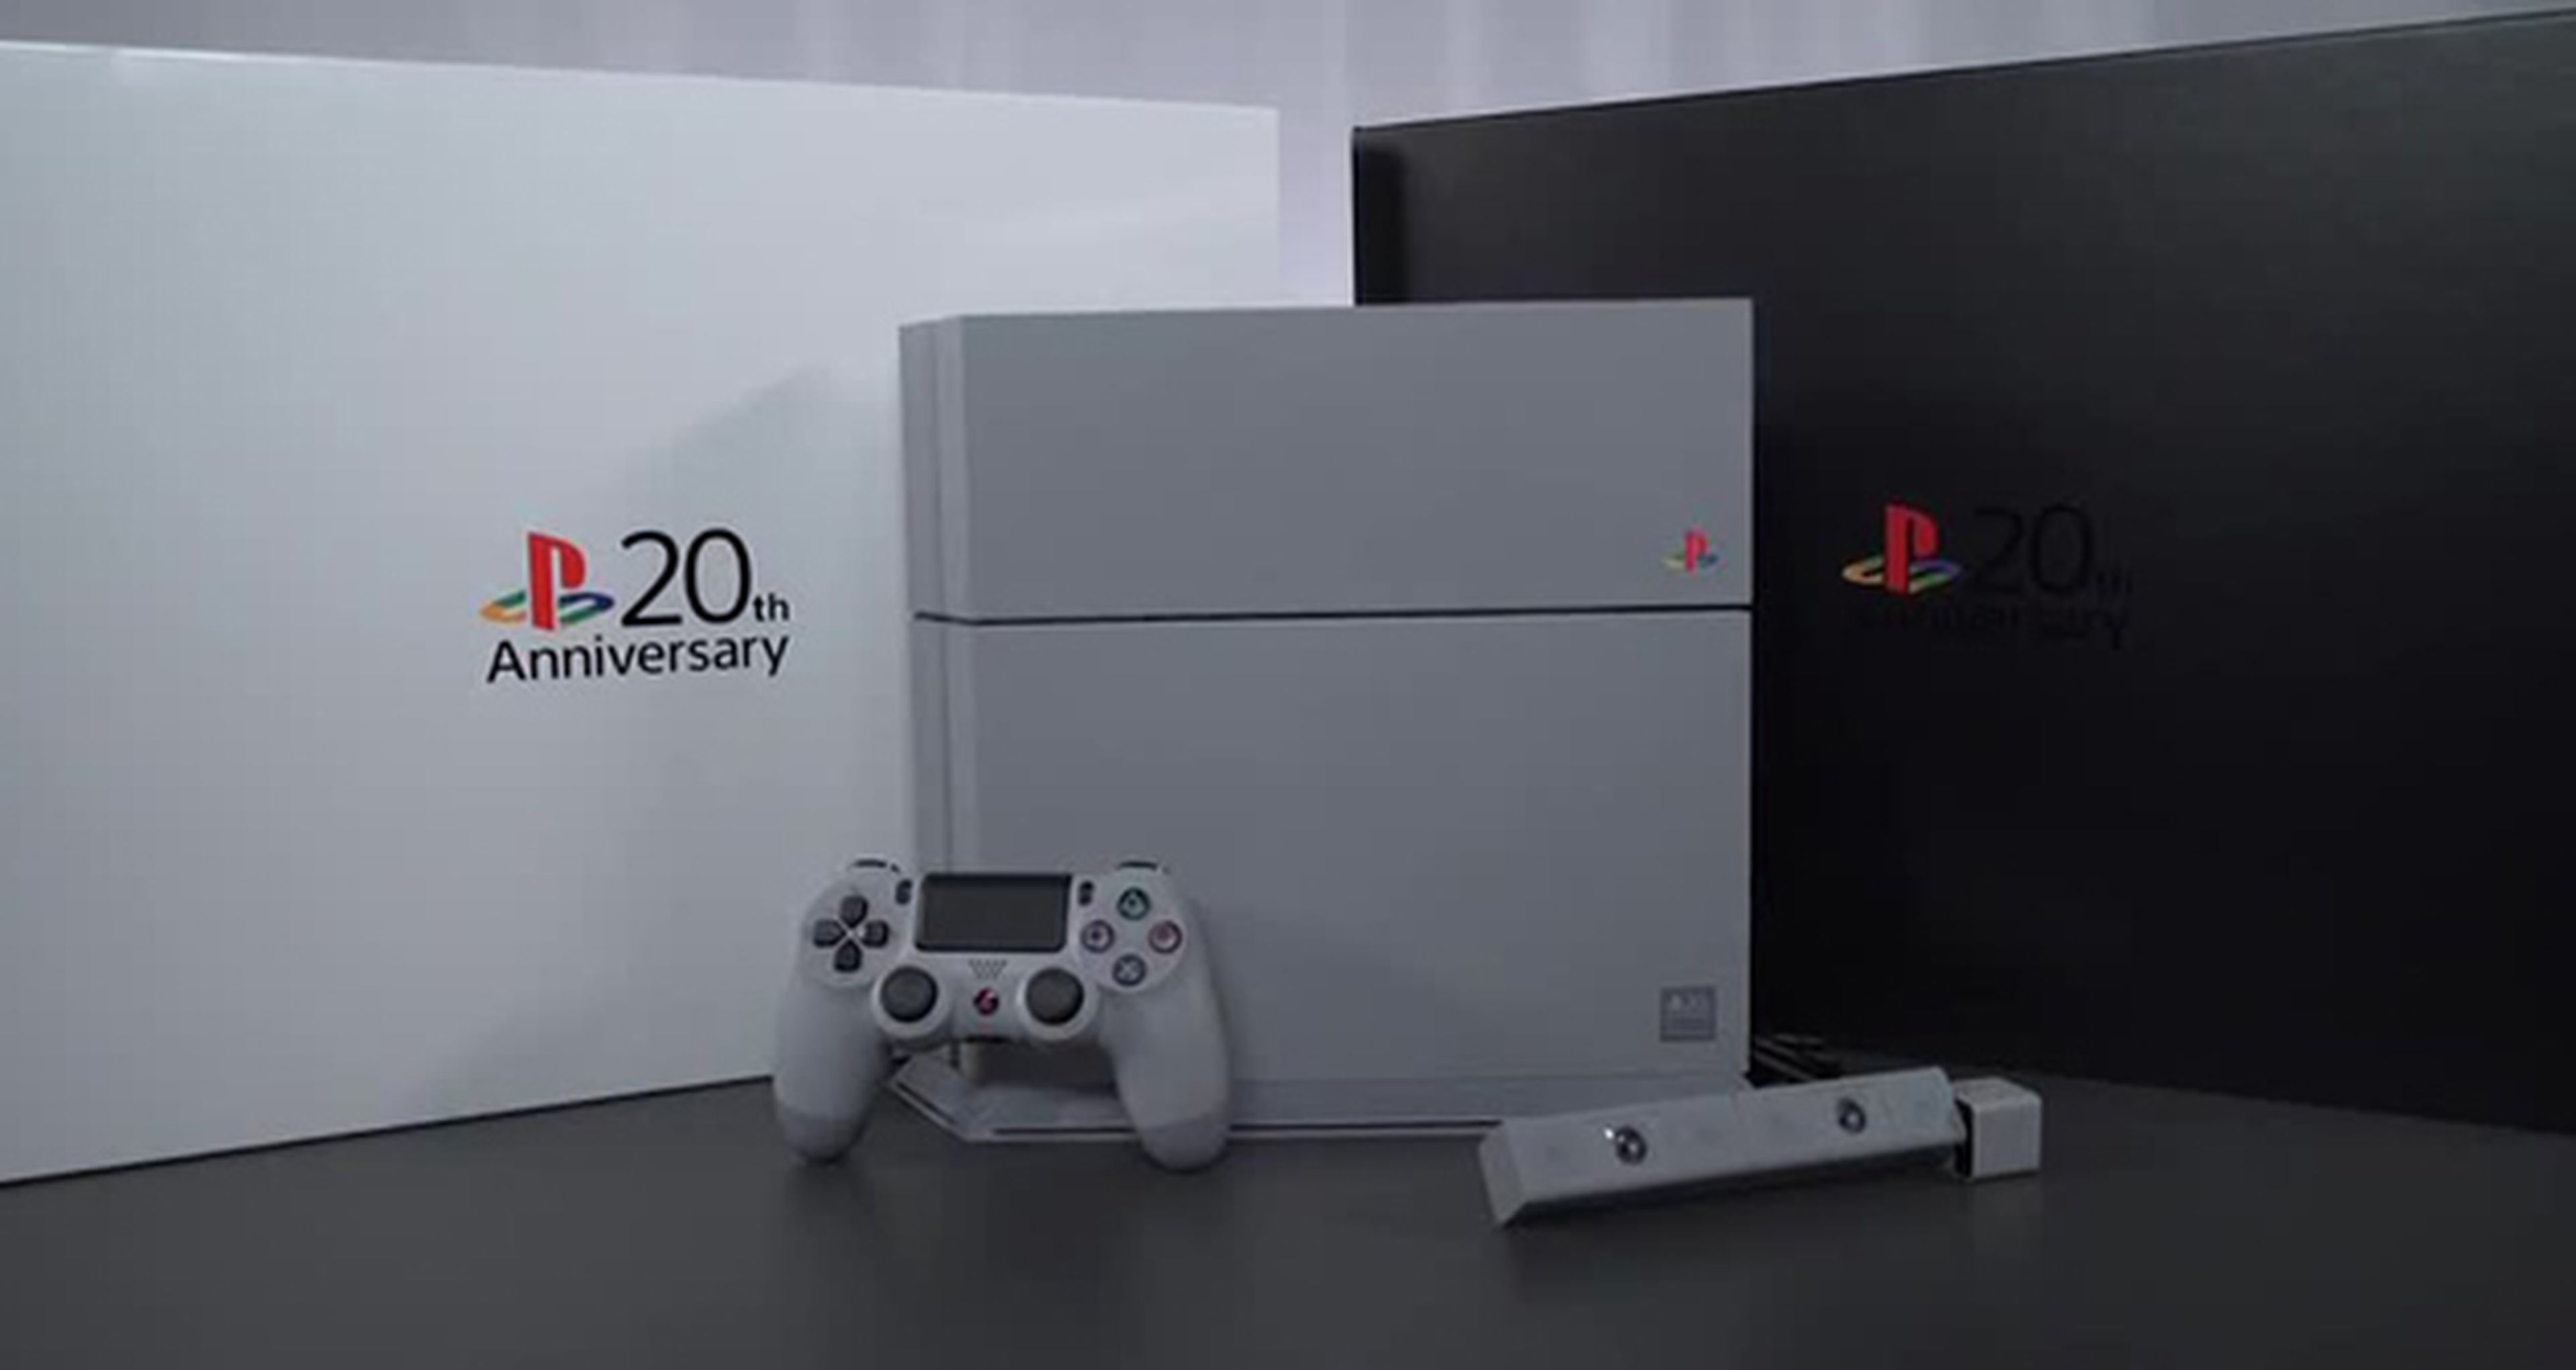 Comprar una PS4 20 aniversario en España será posible esta semana